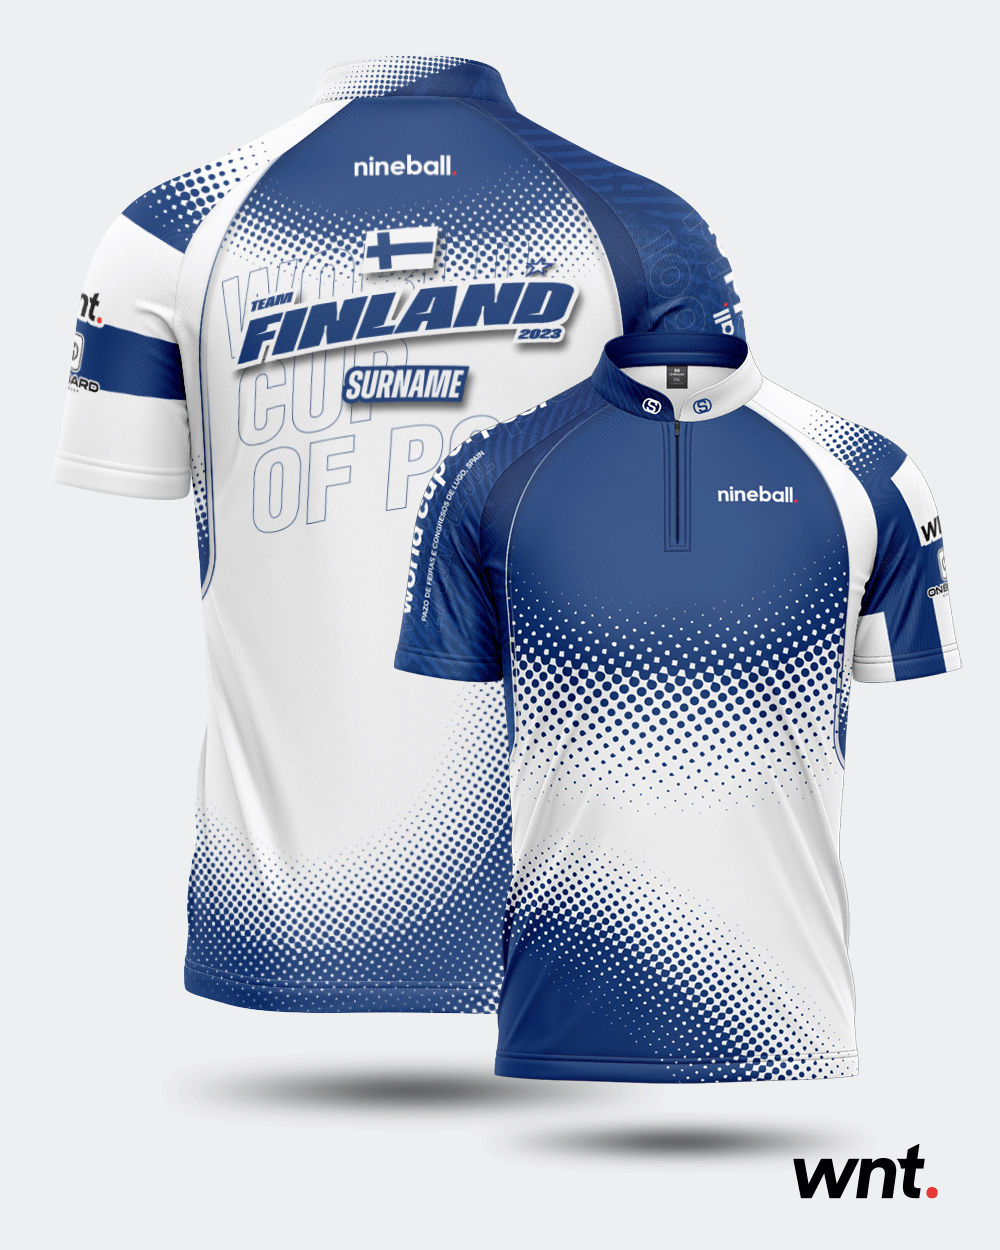 Team Finland - WCOP 2023